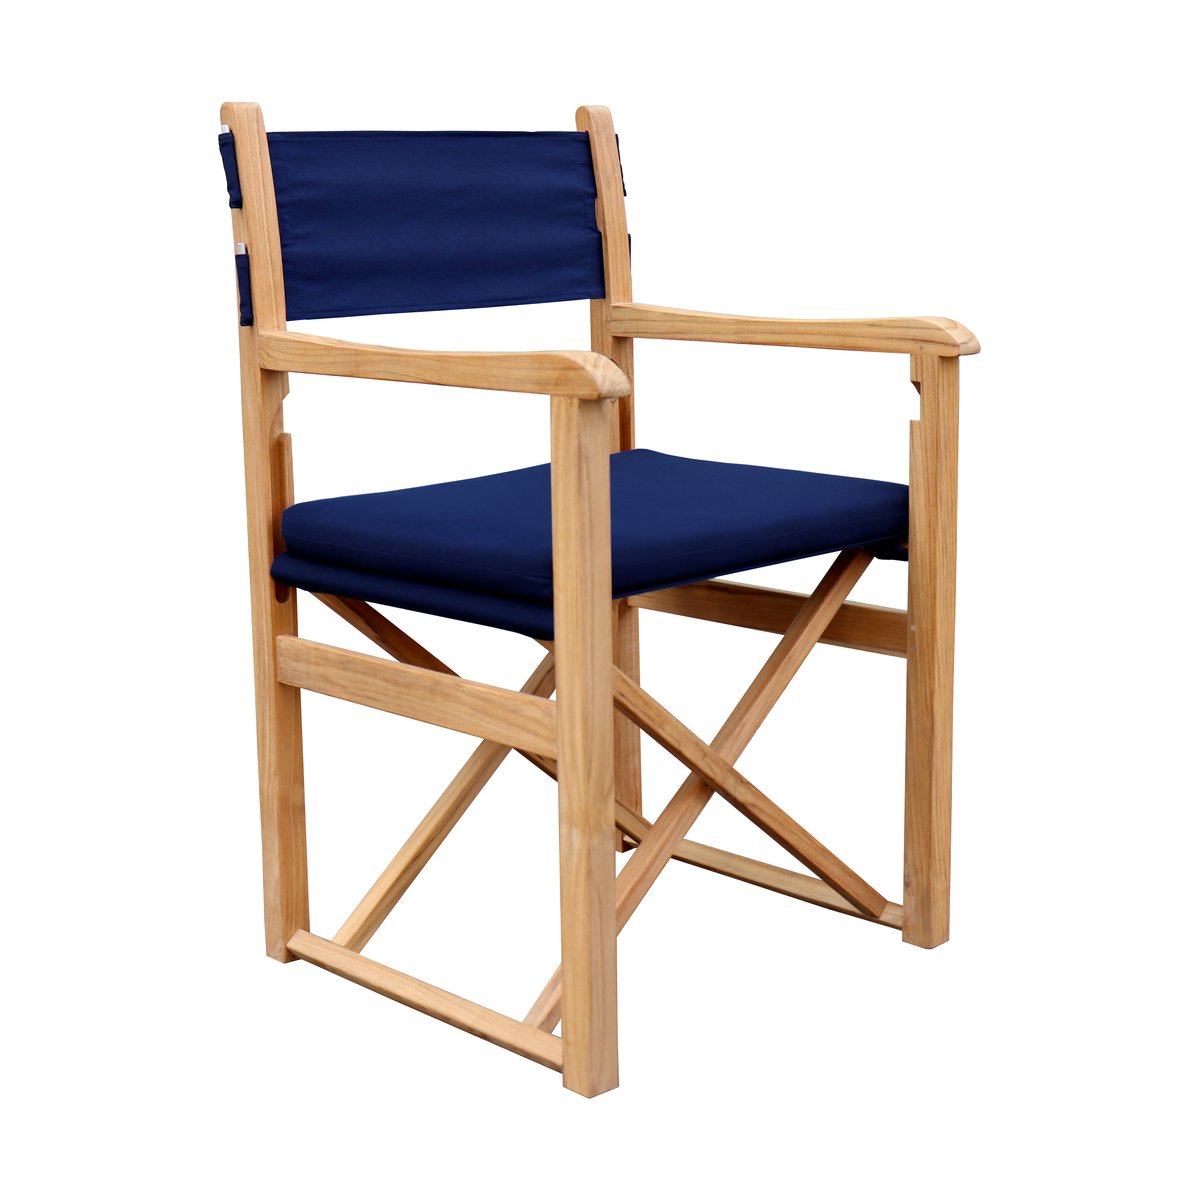 Stockamöllan Haväng stoel Marineblauw